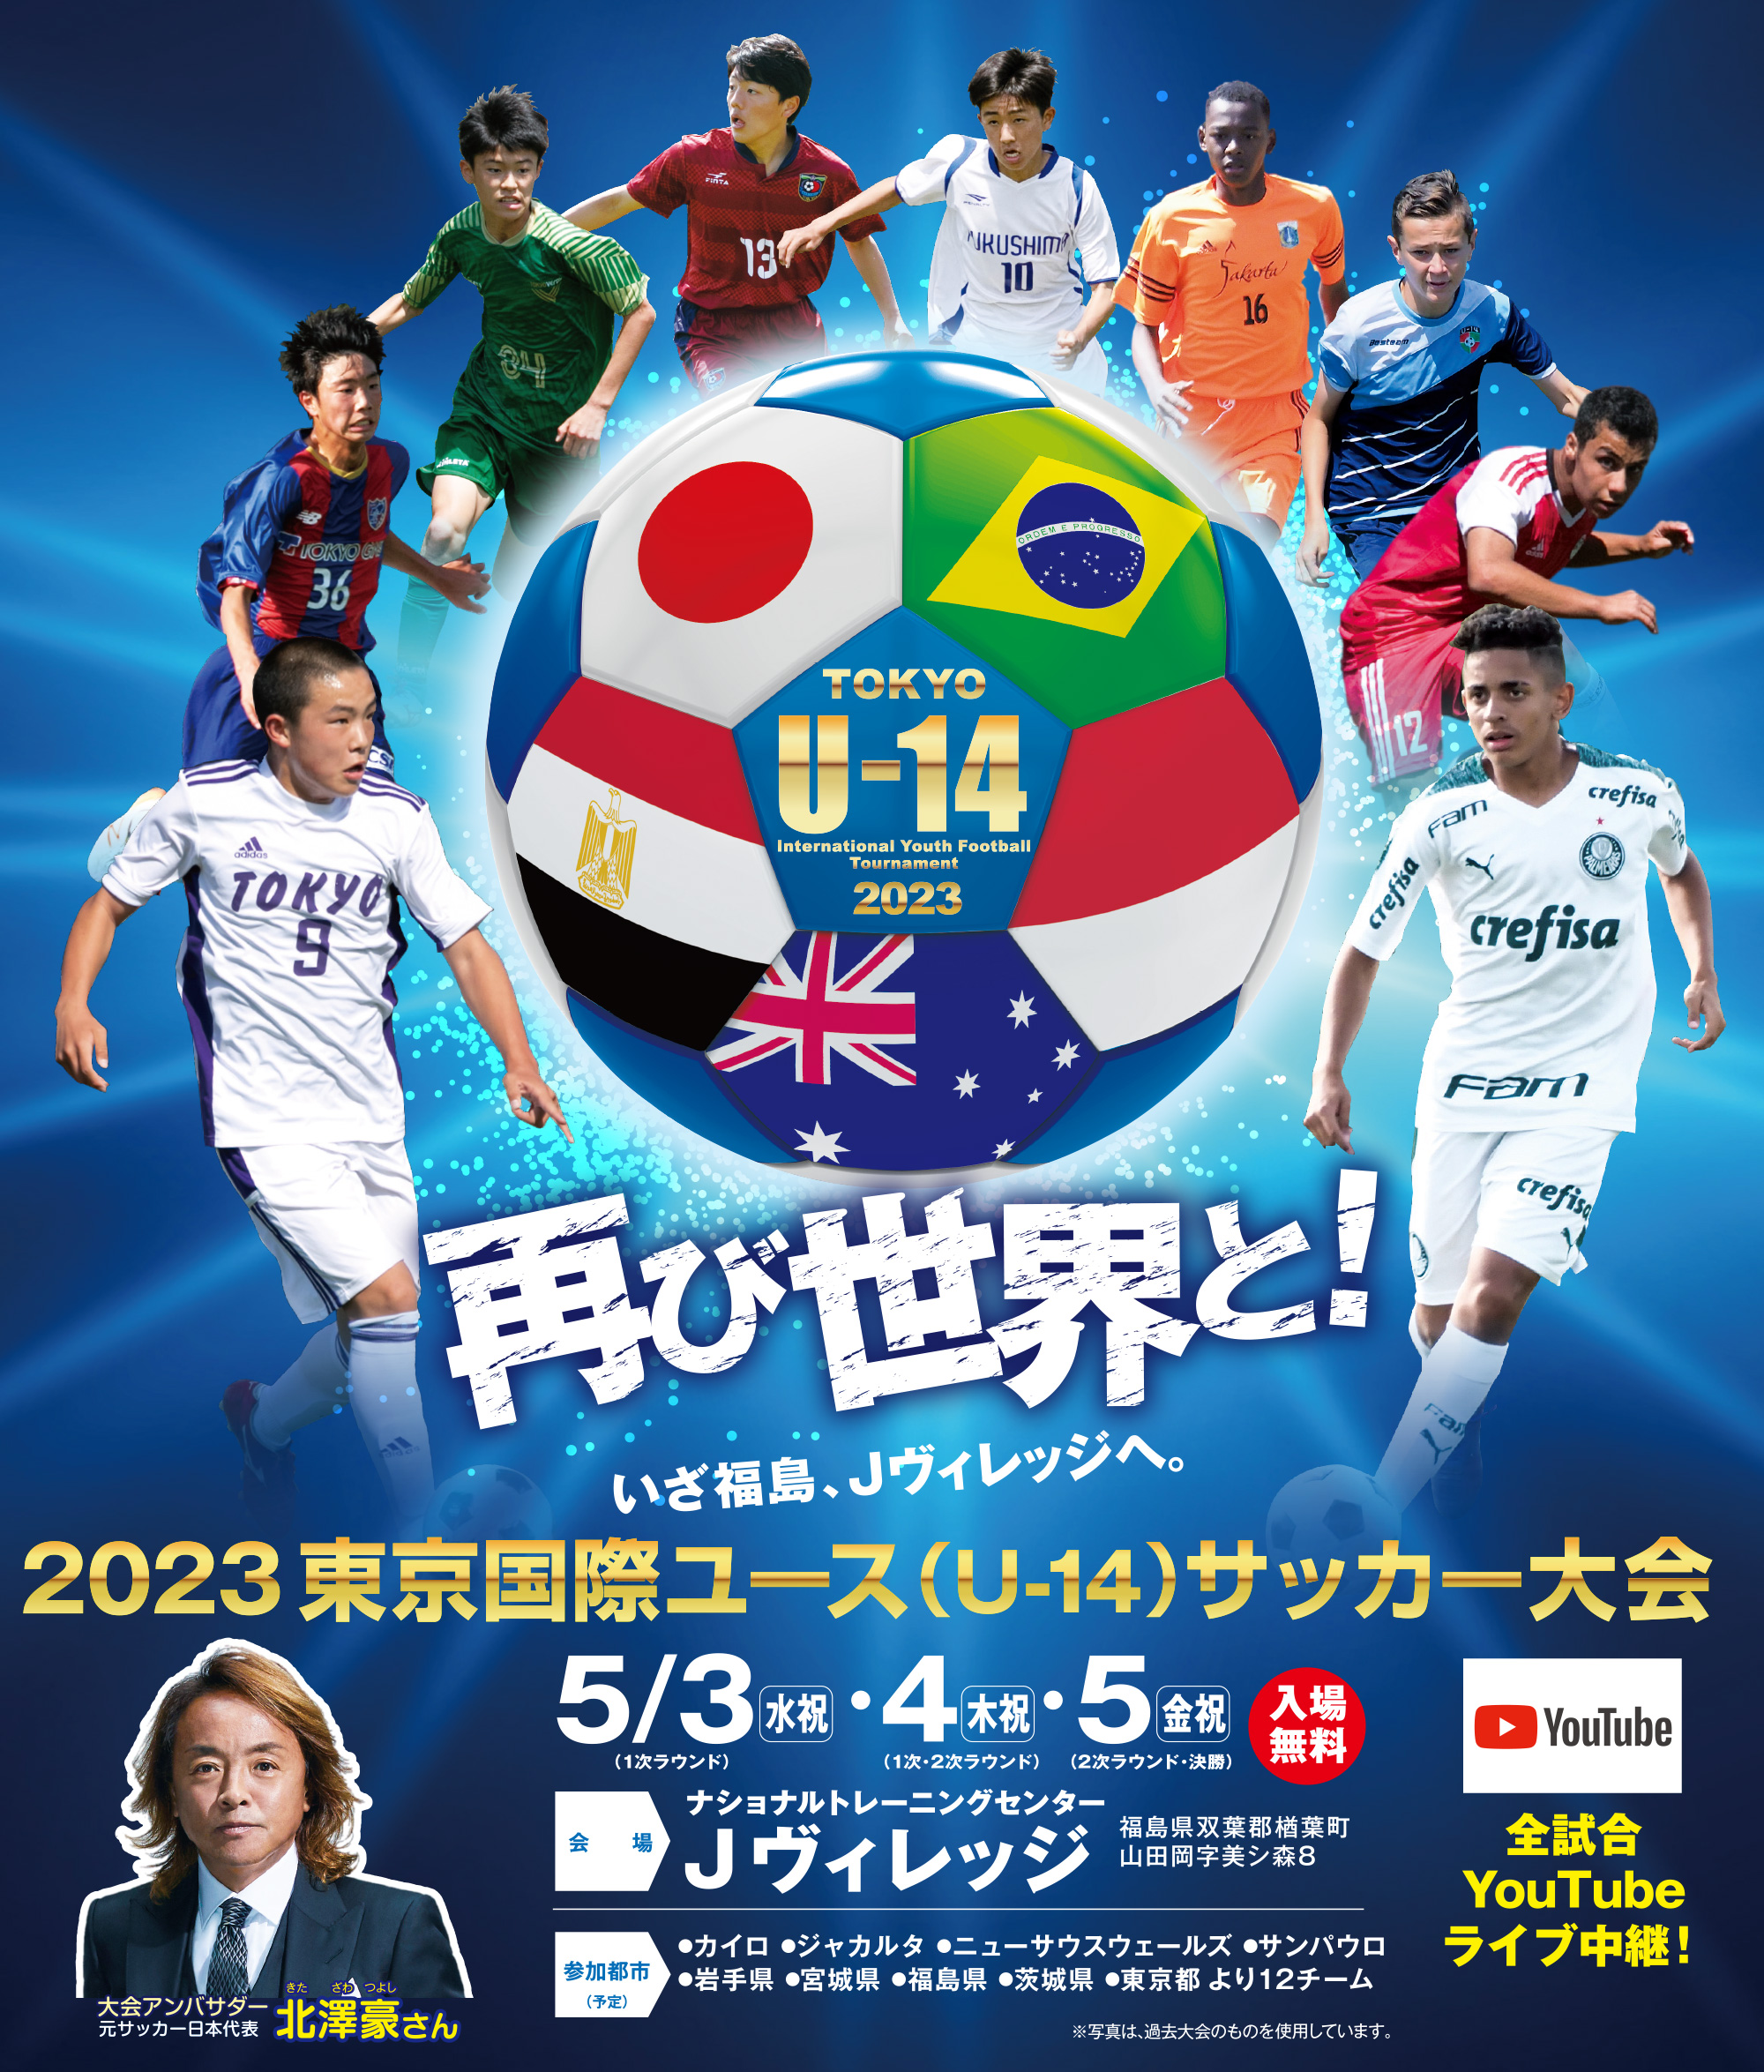 2023東京国際ユース(U-14)サッカー大会 Tokyo U-14 International Youth Football Tournament